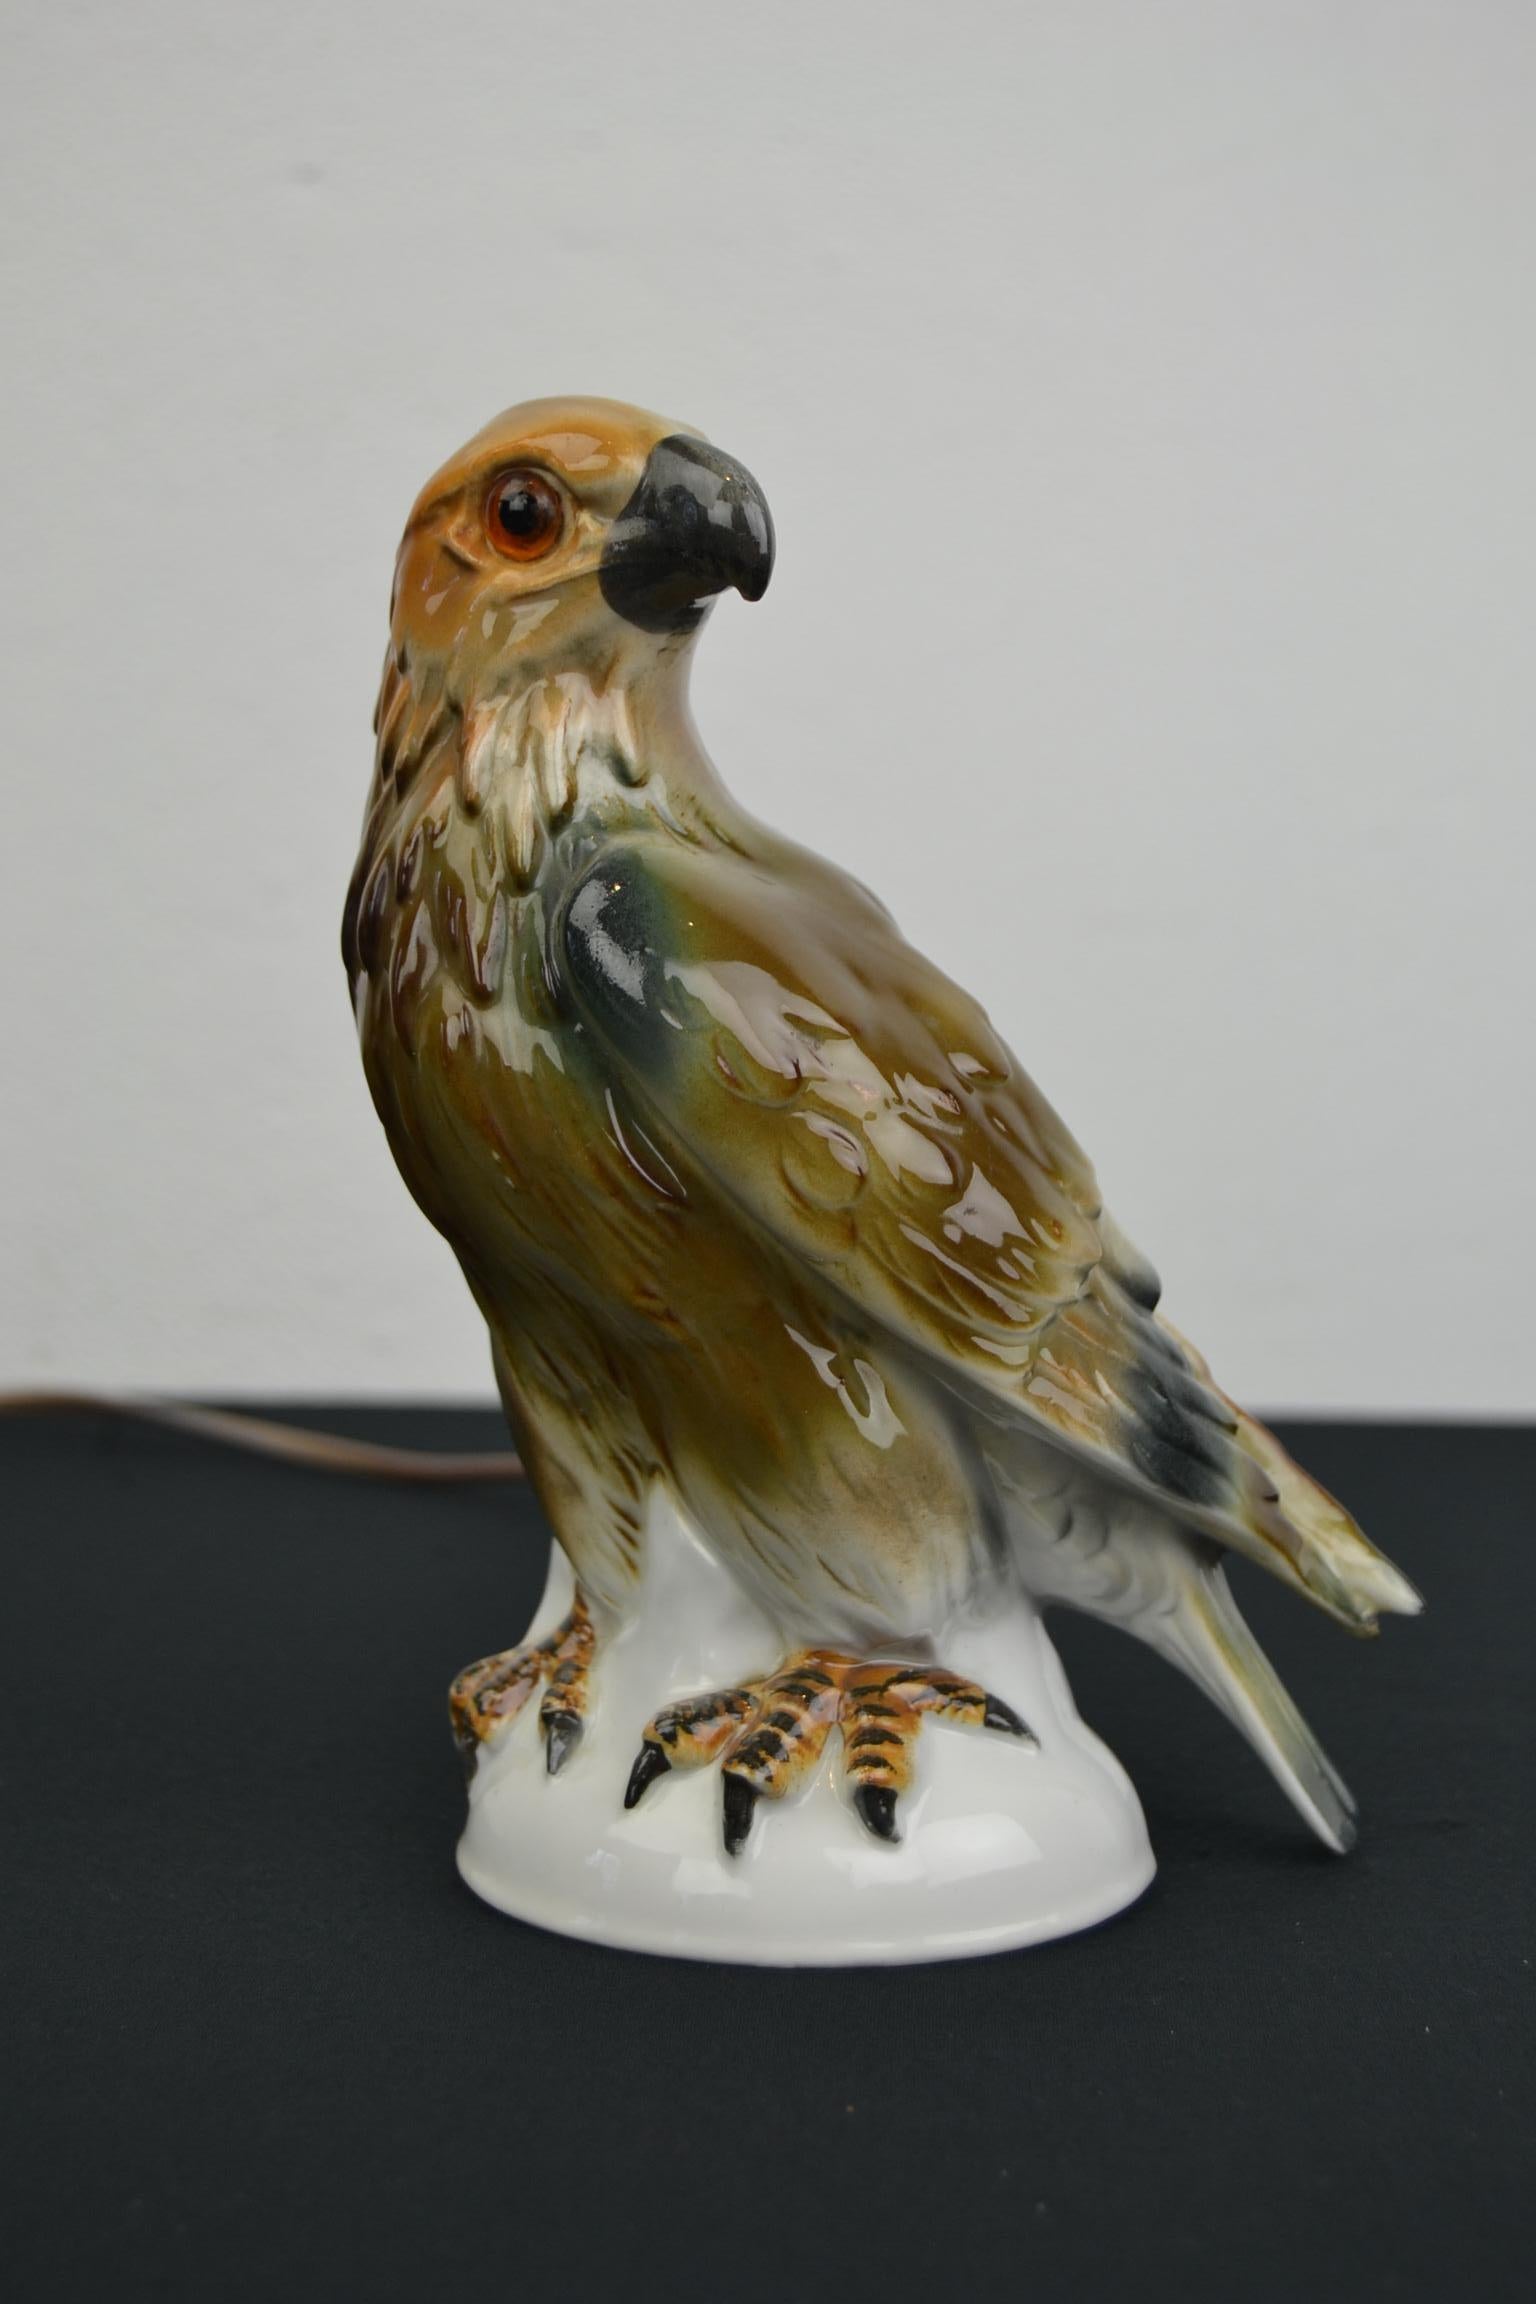 Großartig aussehende Parfümlampe in Form eines Adlers. 
Parfümlampe in Form einer Porzellanadler-Skulptur mit Glasaugen.
Diese Tierstatue, Tierleuchte, Vogellampe stammt aus der Zeit des Art Déco, wo große Farben verwendet wurden.
Es ist eine